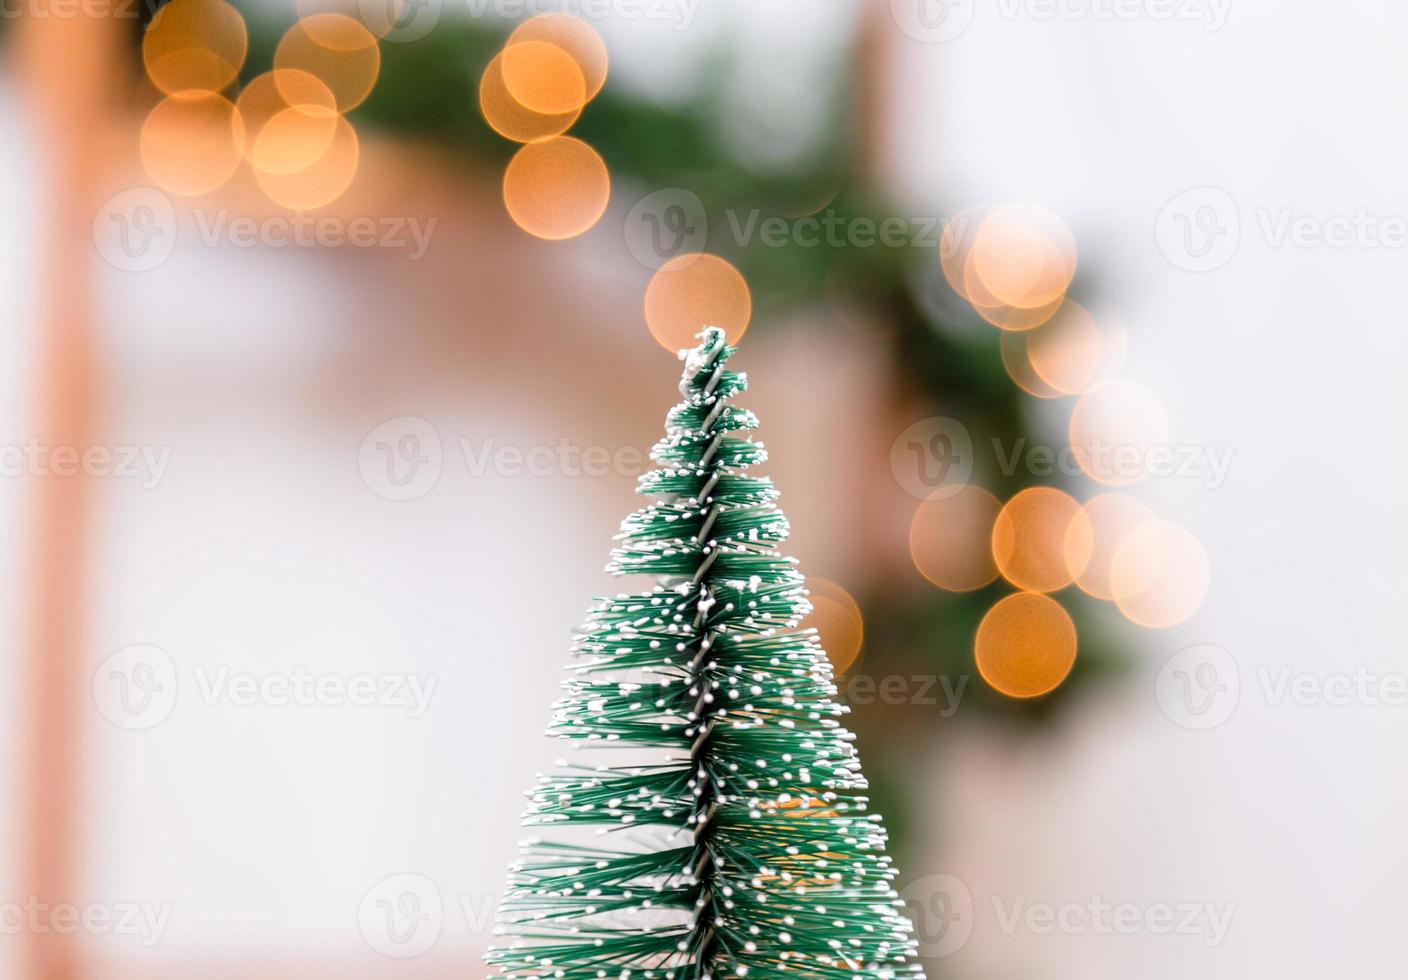 miniatuur kerstboom op de onscherpe achtergrond met kerstverlichting foto